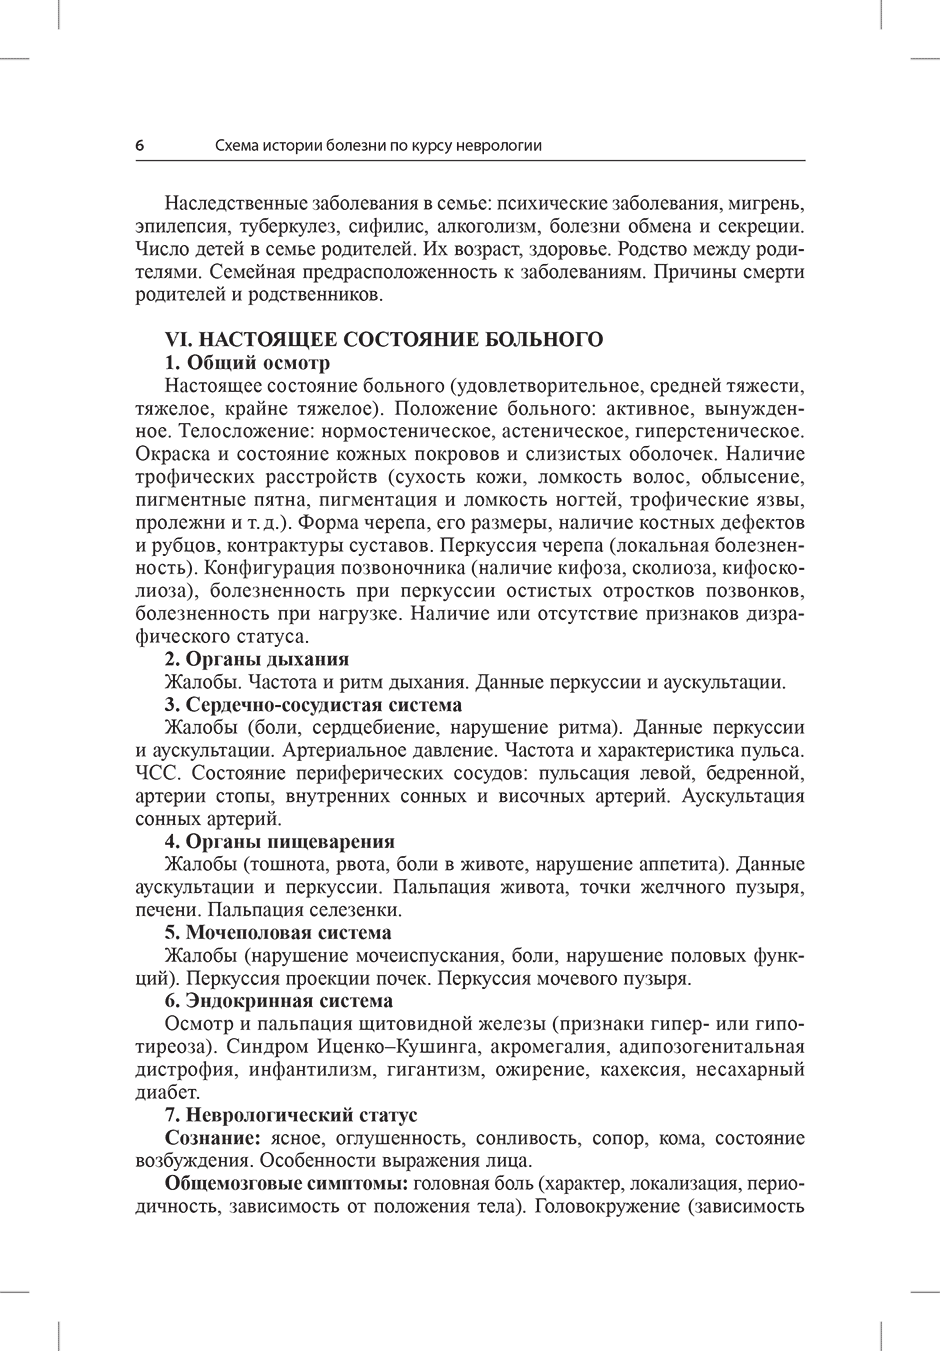 Пример страницы из книги "История болезни по неврологии" - Е. И. Гусев, А. Н. Боголепова